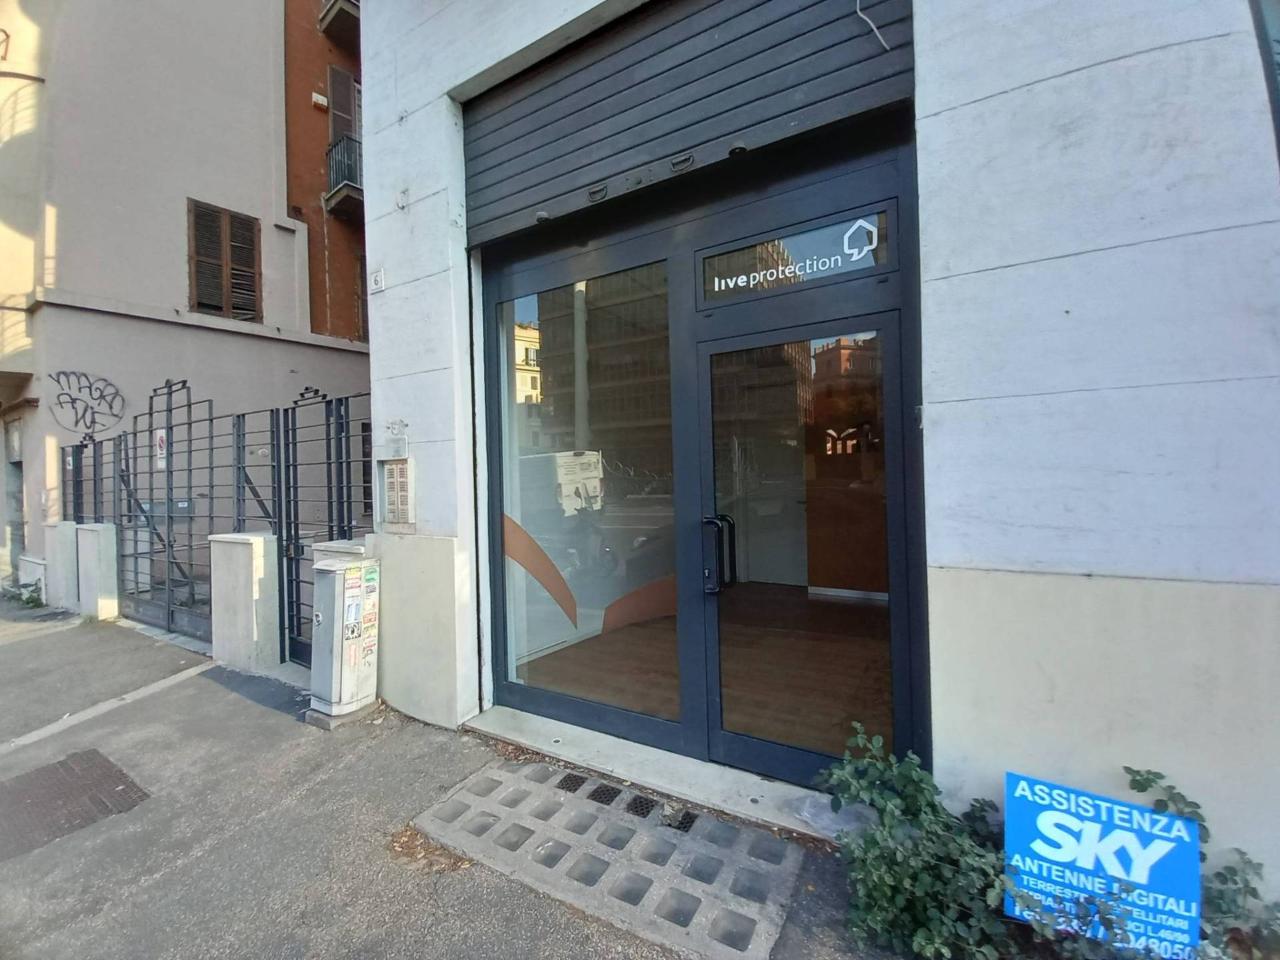 Negozio, vendita, Via Giovanni Battista Morgagni 4, Roma • Commerciali.it